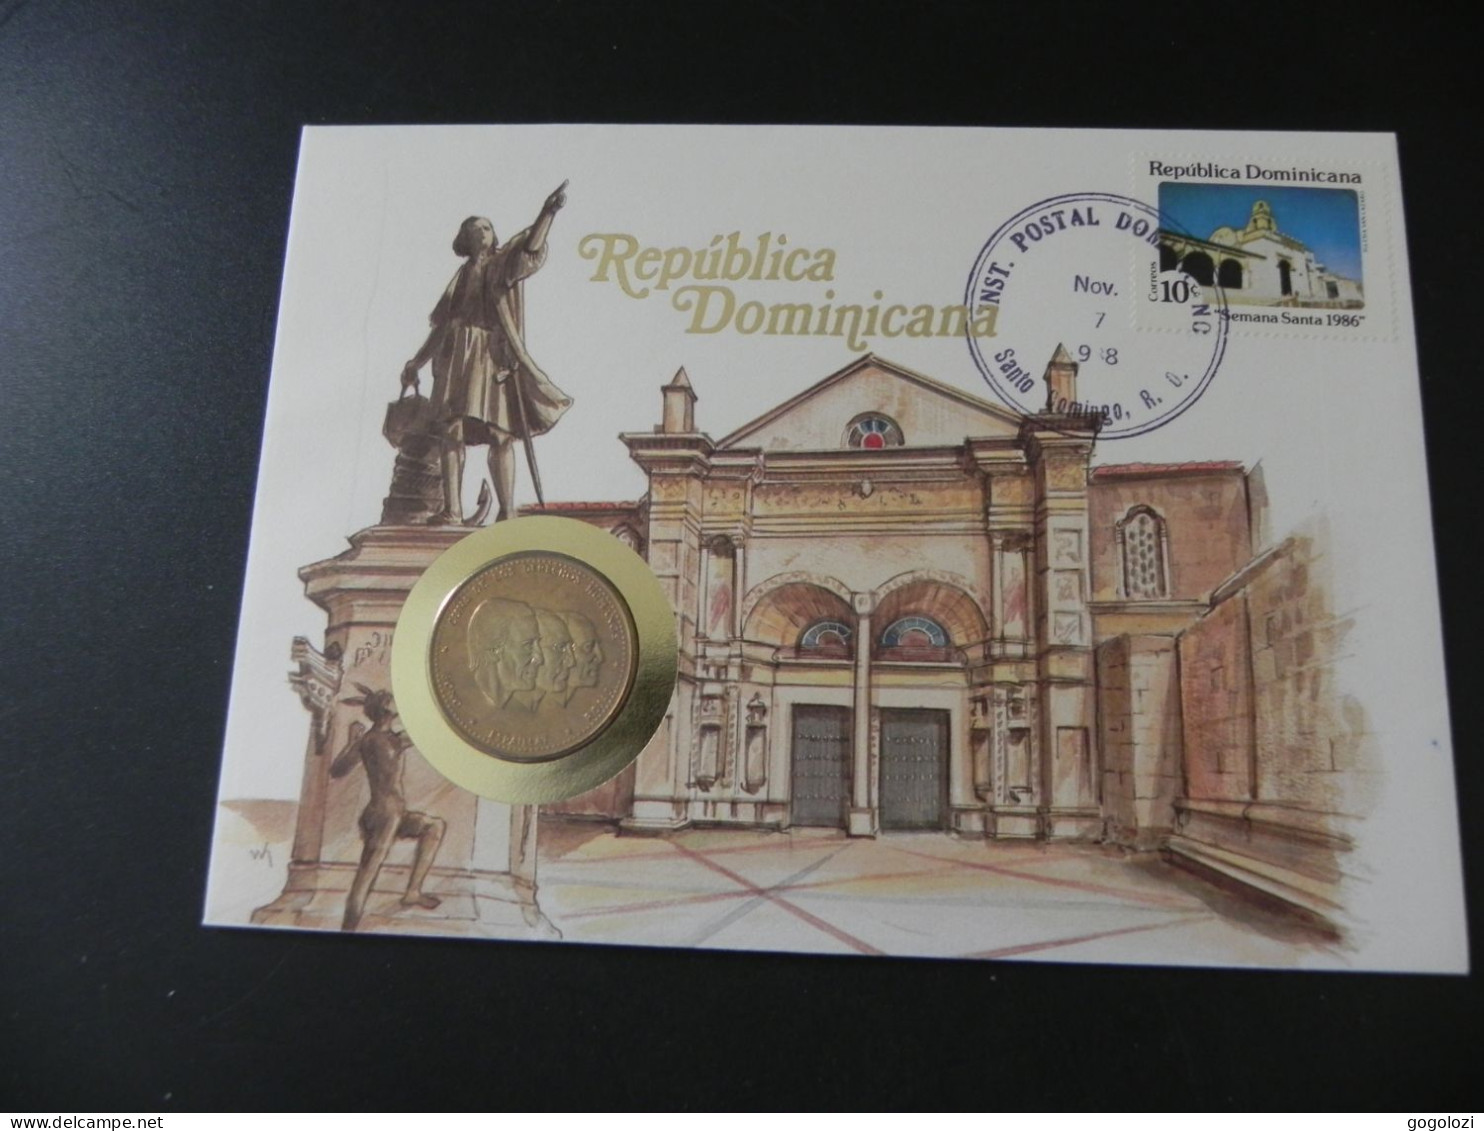 Dominican Republic 1/2 Peso 1983 - Cuna De Los Derechos Humanos - Bono Espaillat Rojas - Numis Letter 1988 - Dominicaanse Republiek